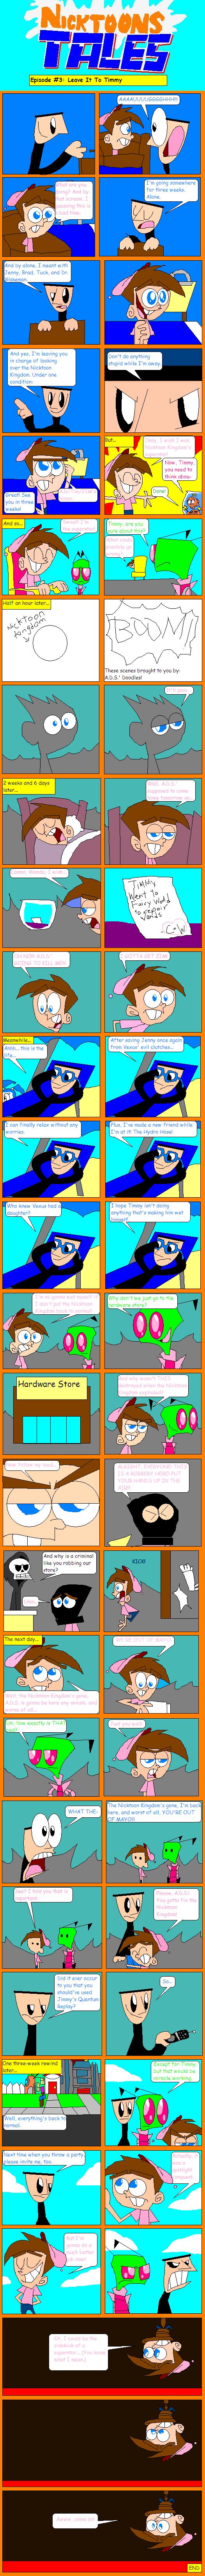 Nicktoons Tales #3 by nicktoonhero